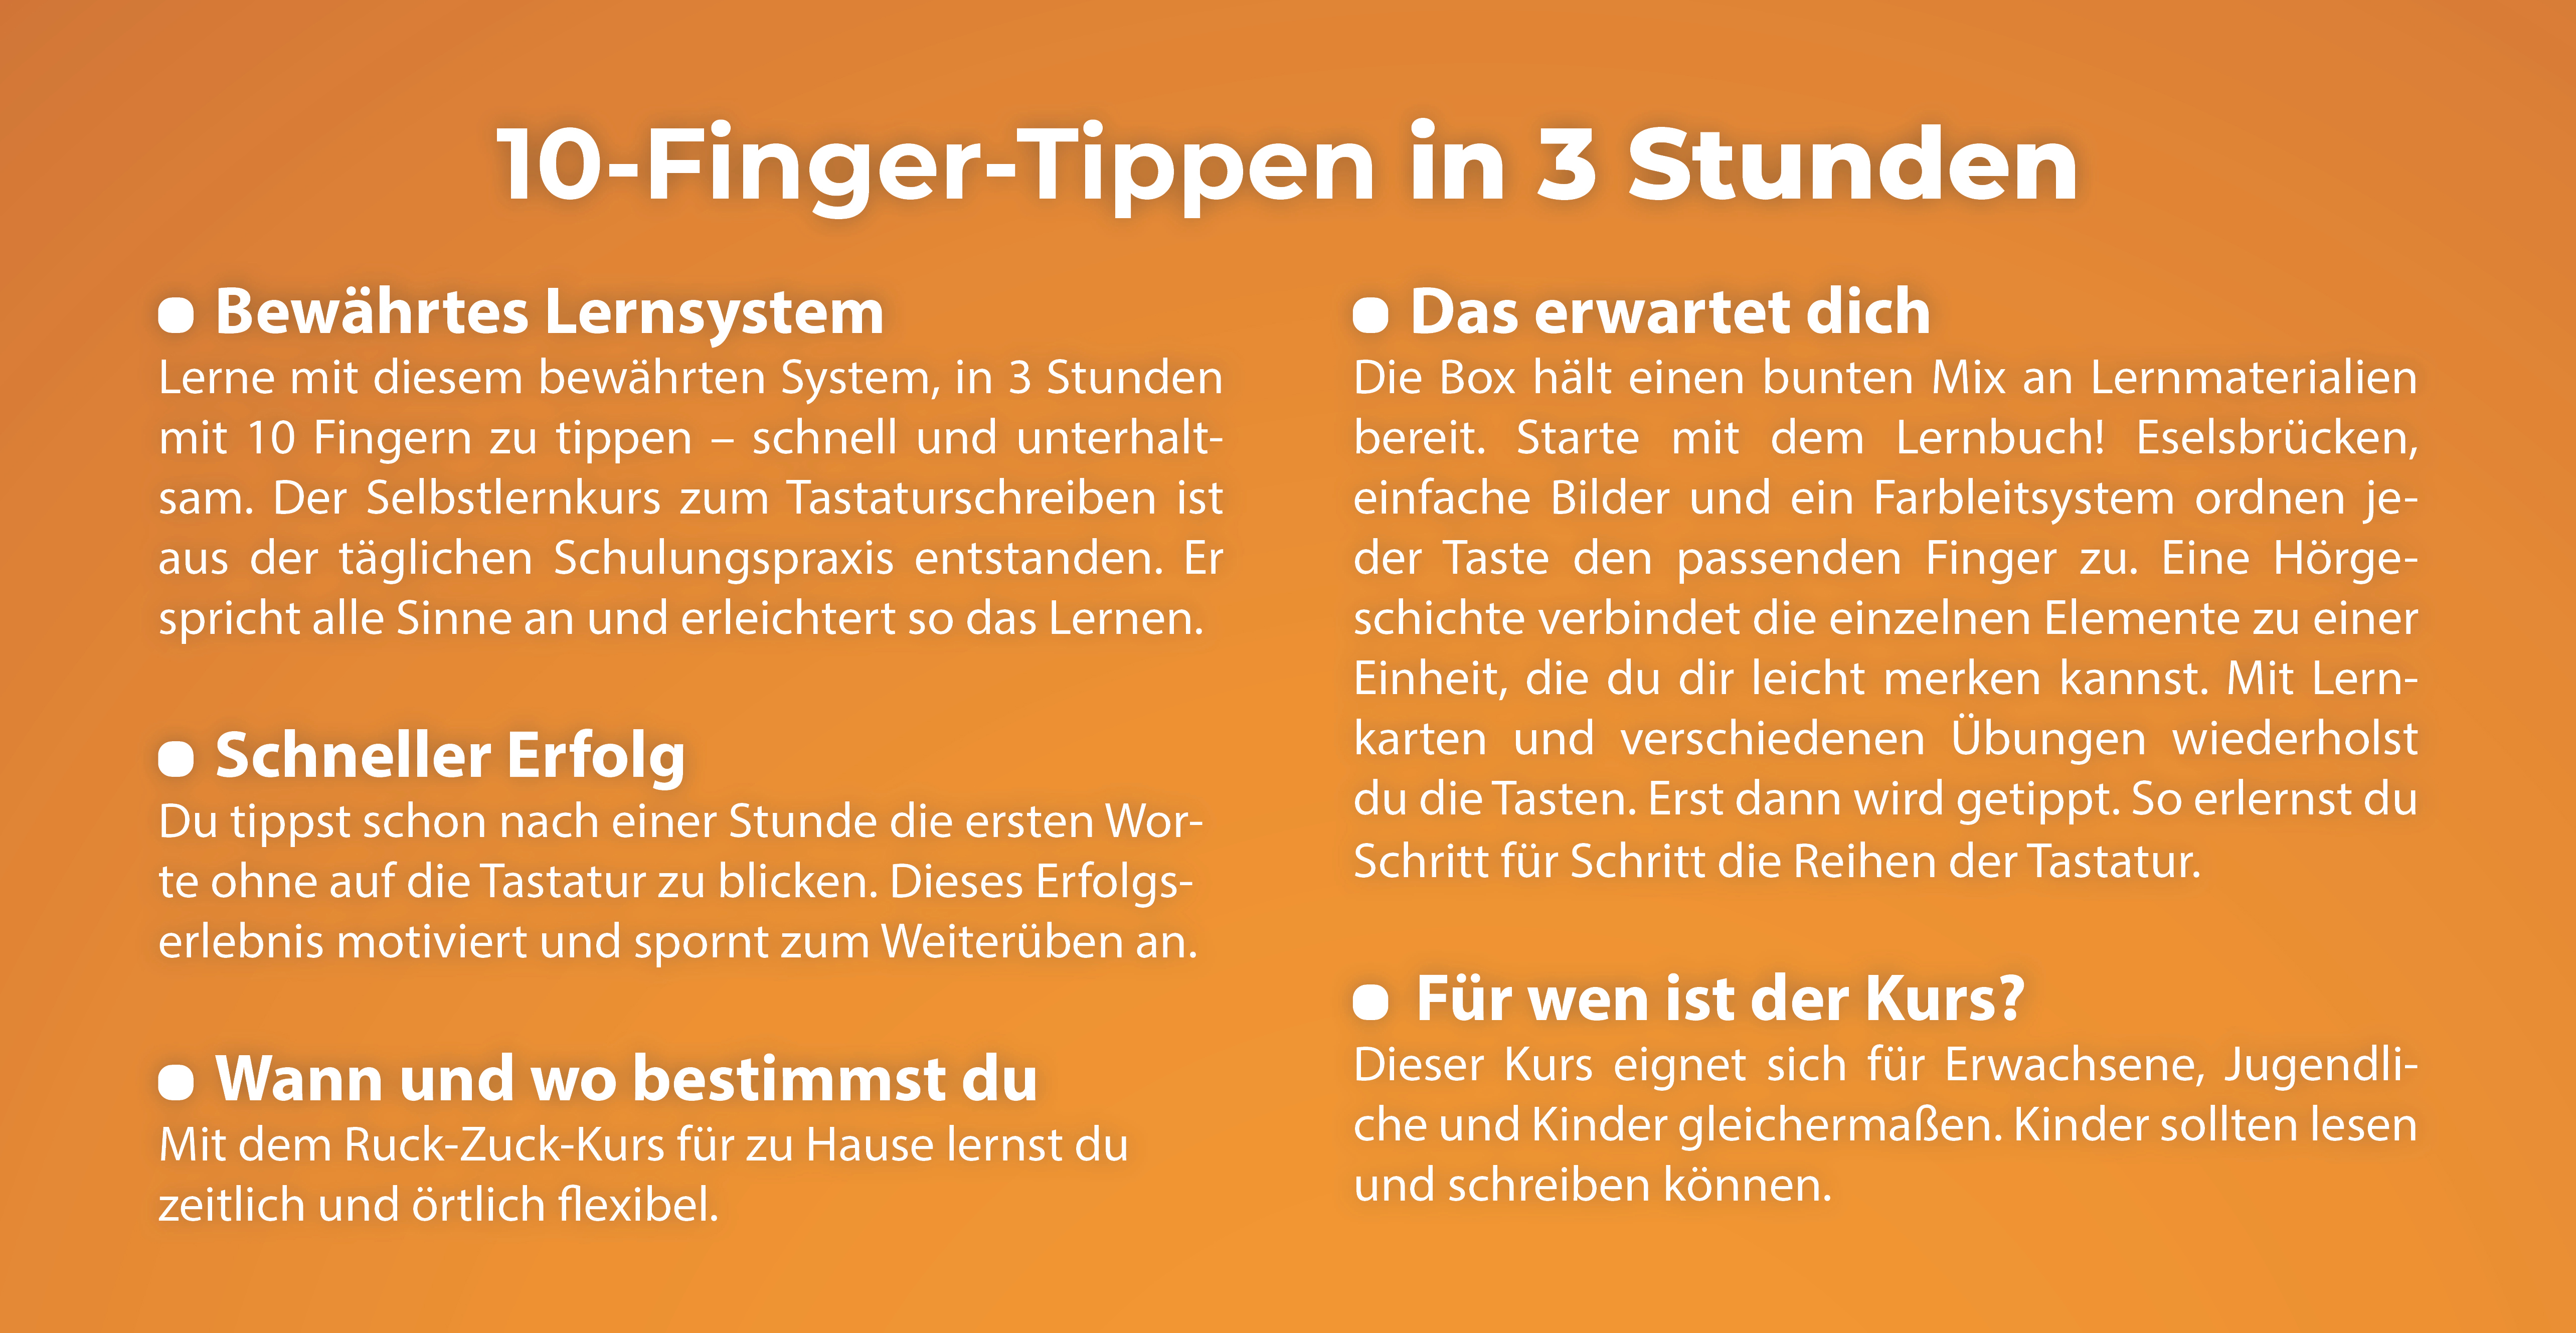 Zehn-Finger-Schreiben: r baut Elektroschock-Tastatur -  notebooksbilliger.de Blognotebooksbilliger.de Blog